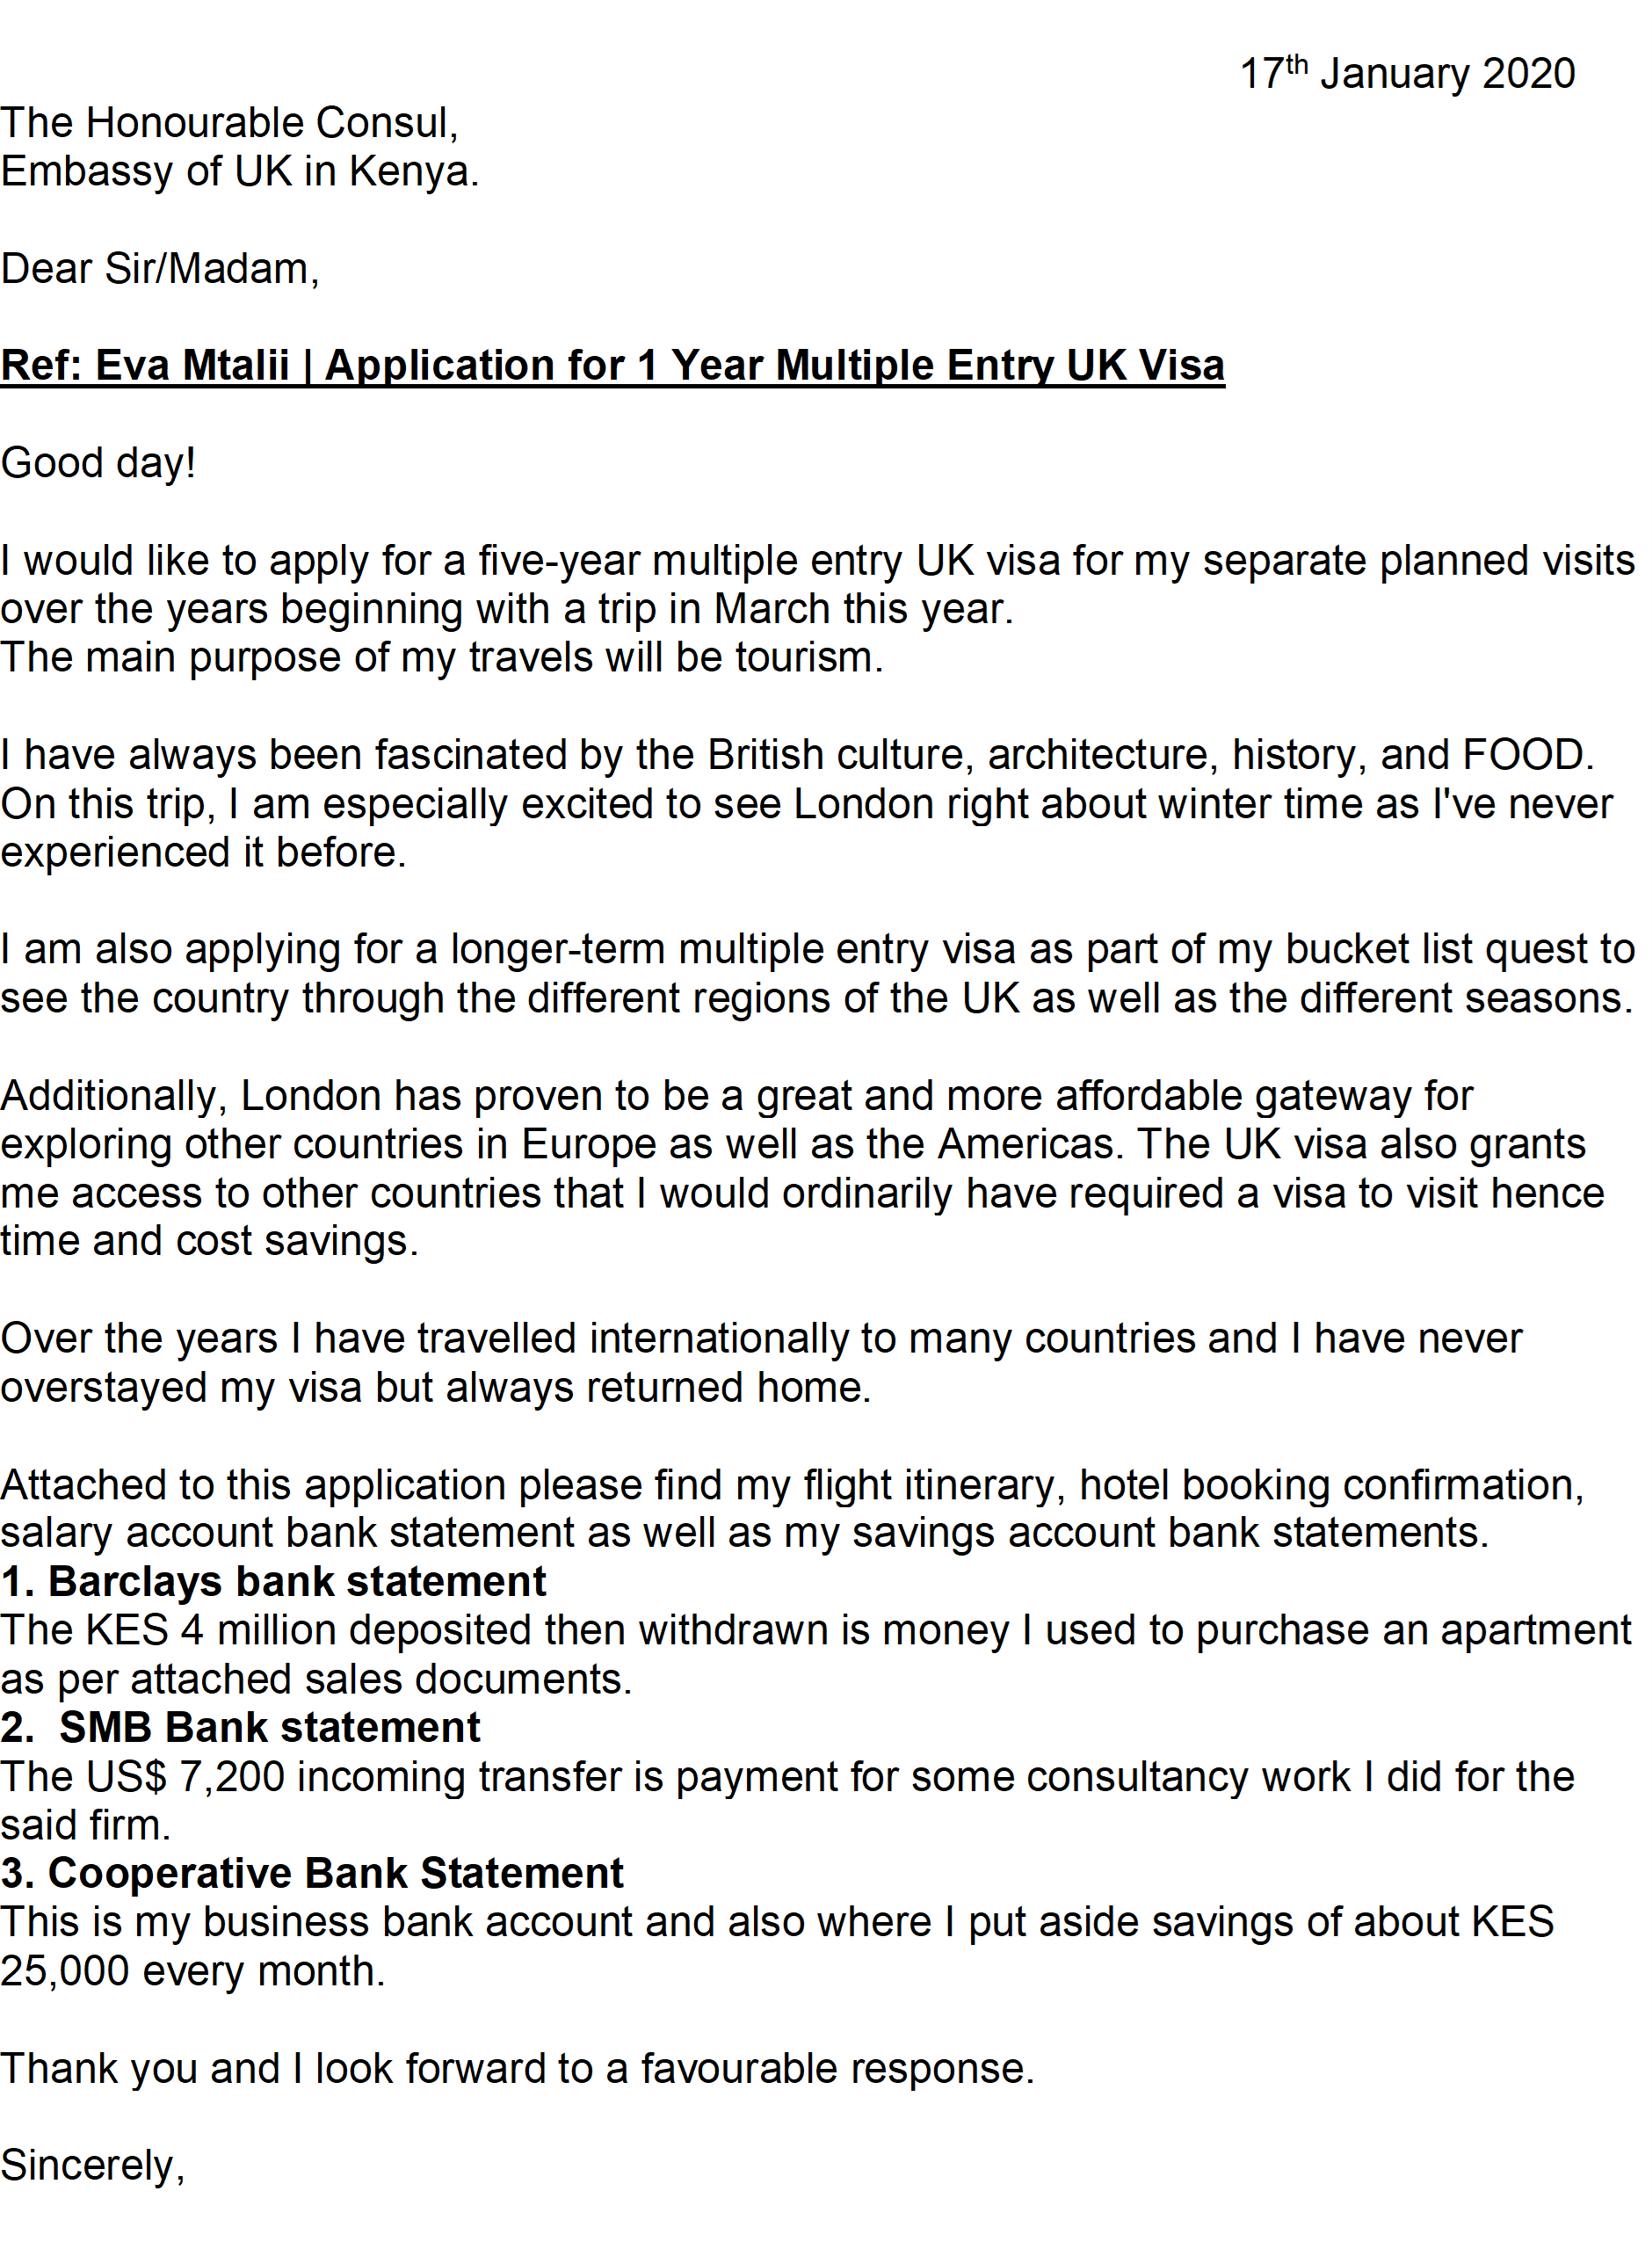 sample cover letter for visa application uk